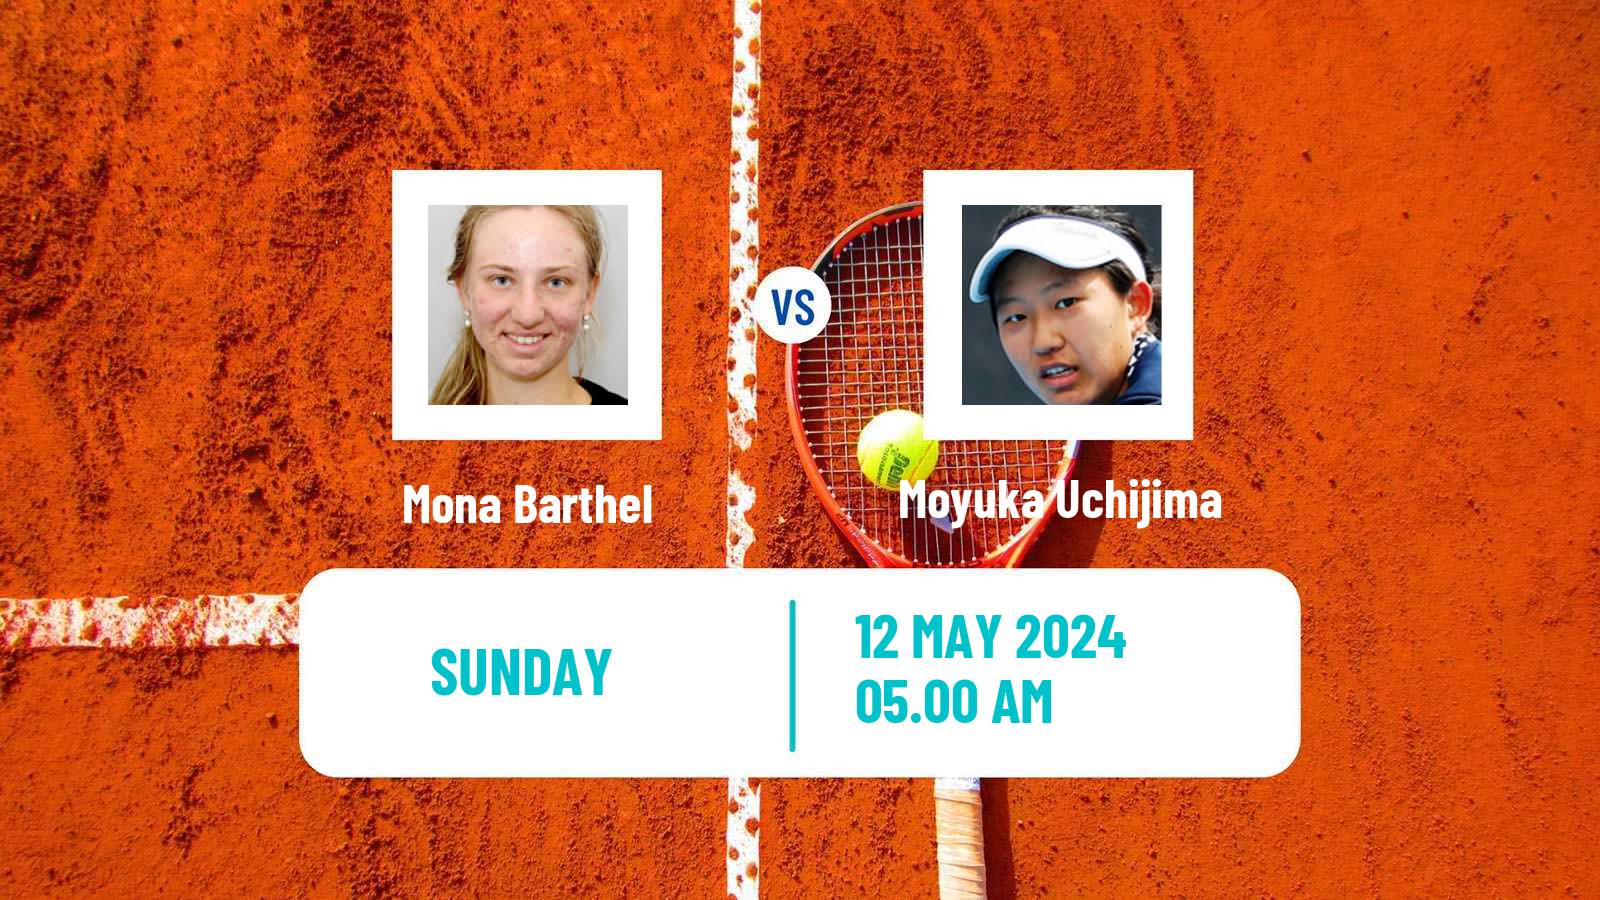 Tennis ITF W75 Trnava 2 Women Mona Barthel - Moyuka Uchijima